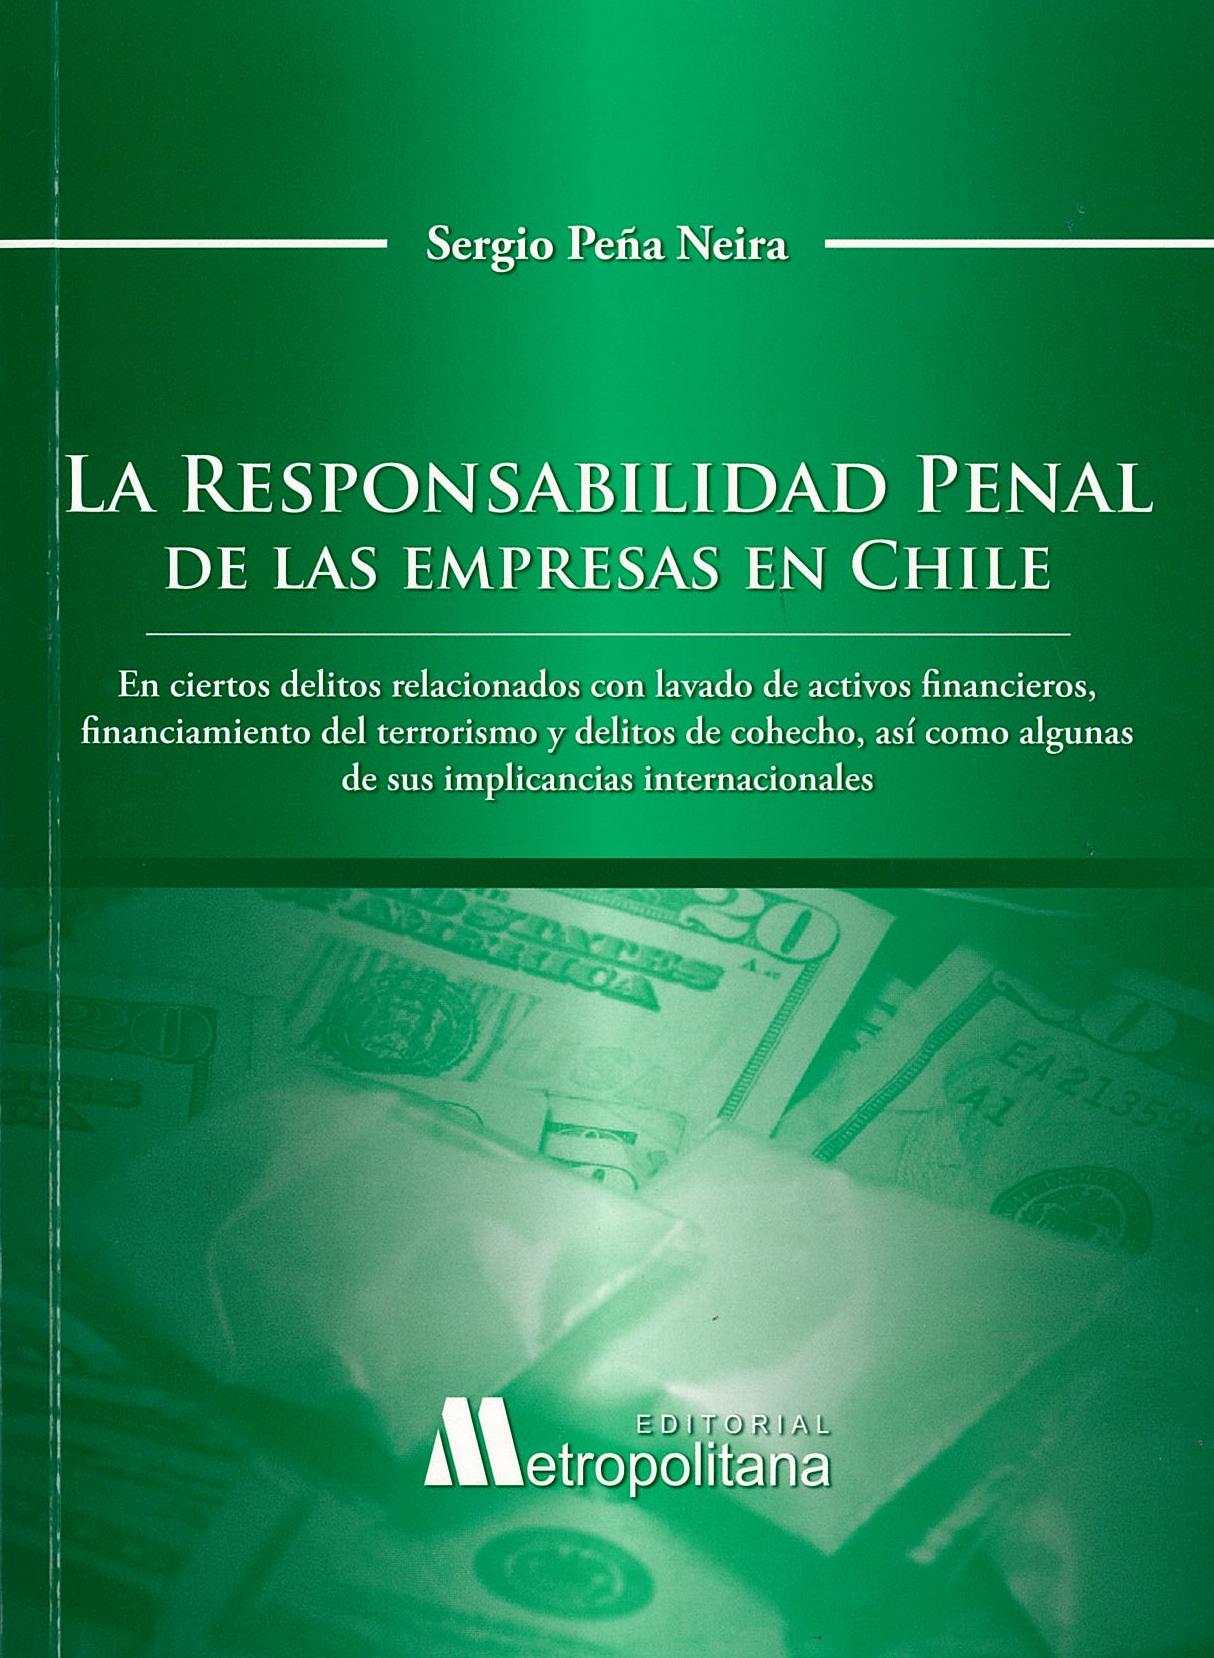 La responsabilidad penal de las empresas en Chile